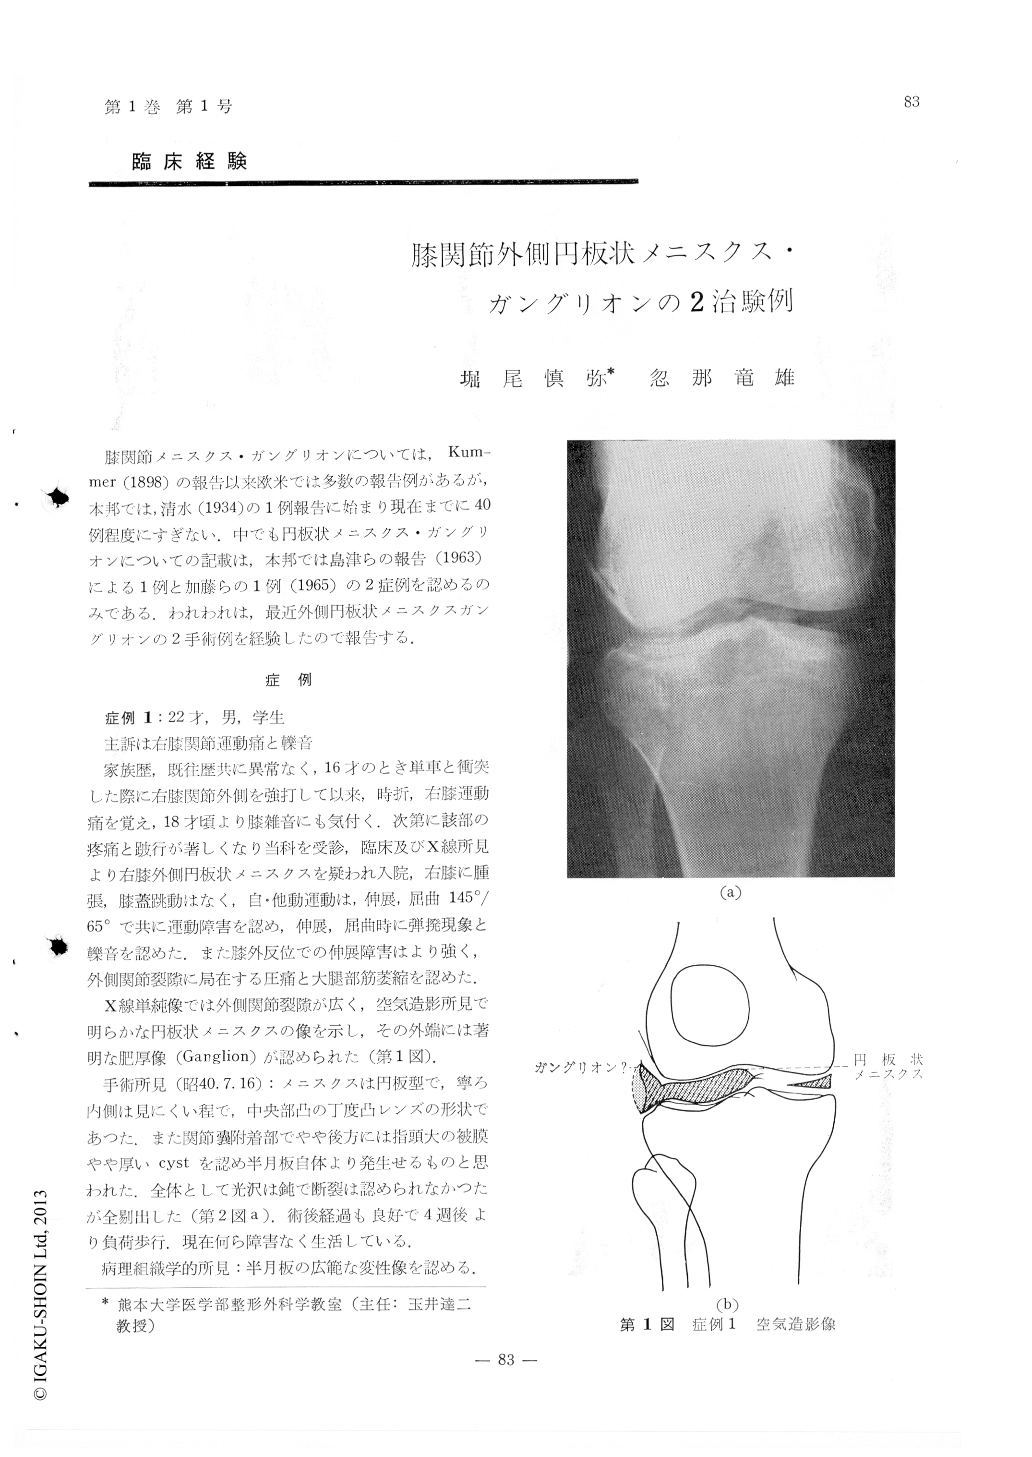 膝関節外側円板状メニスクス ガングリオンの2治験例 臨床整形外科 1巻1号 医書 Jp